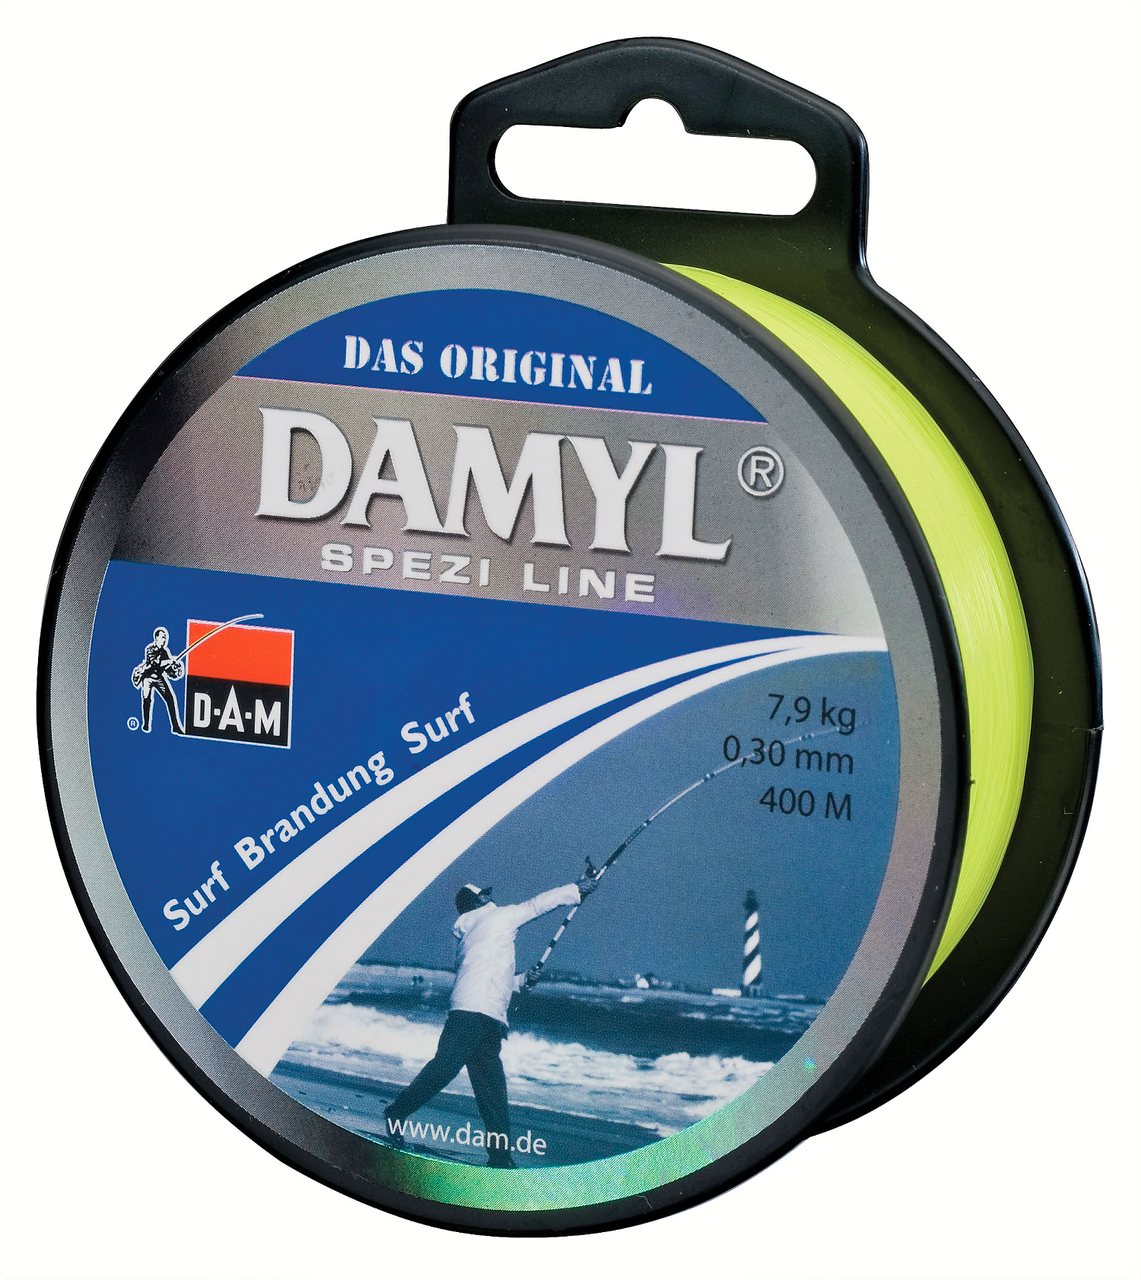 DAM DAMYL SPEZI LINE SURF 0.40mm (250m spool) Quality Monofilament Line -  Adore Tackle